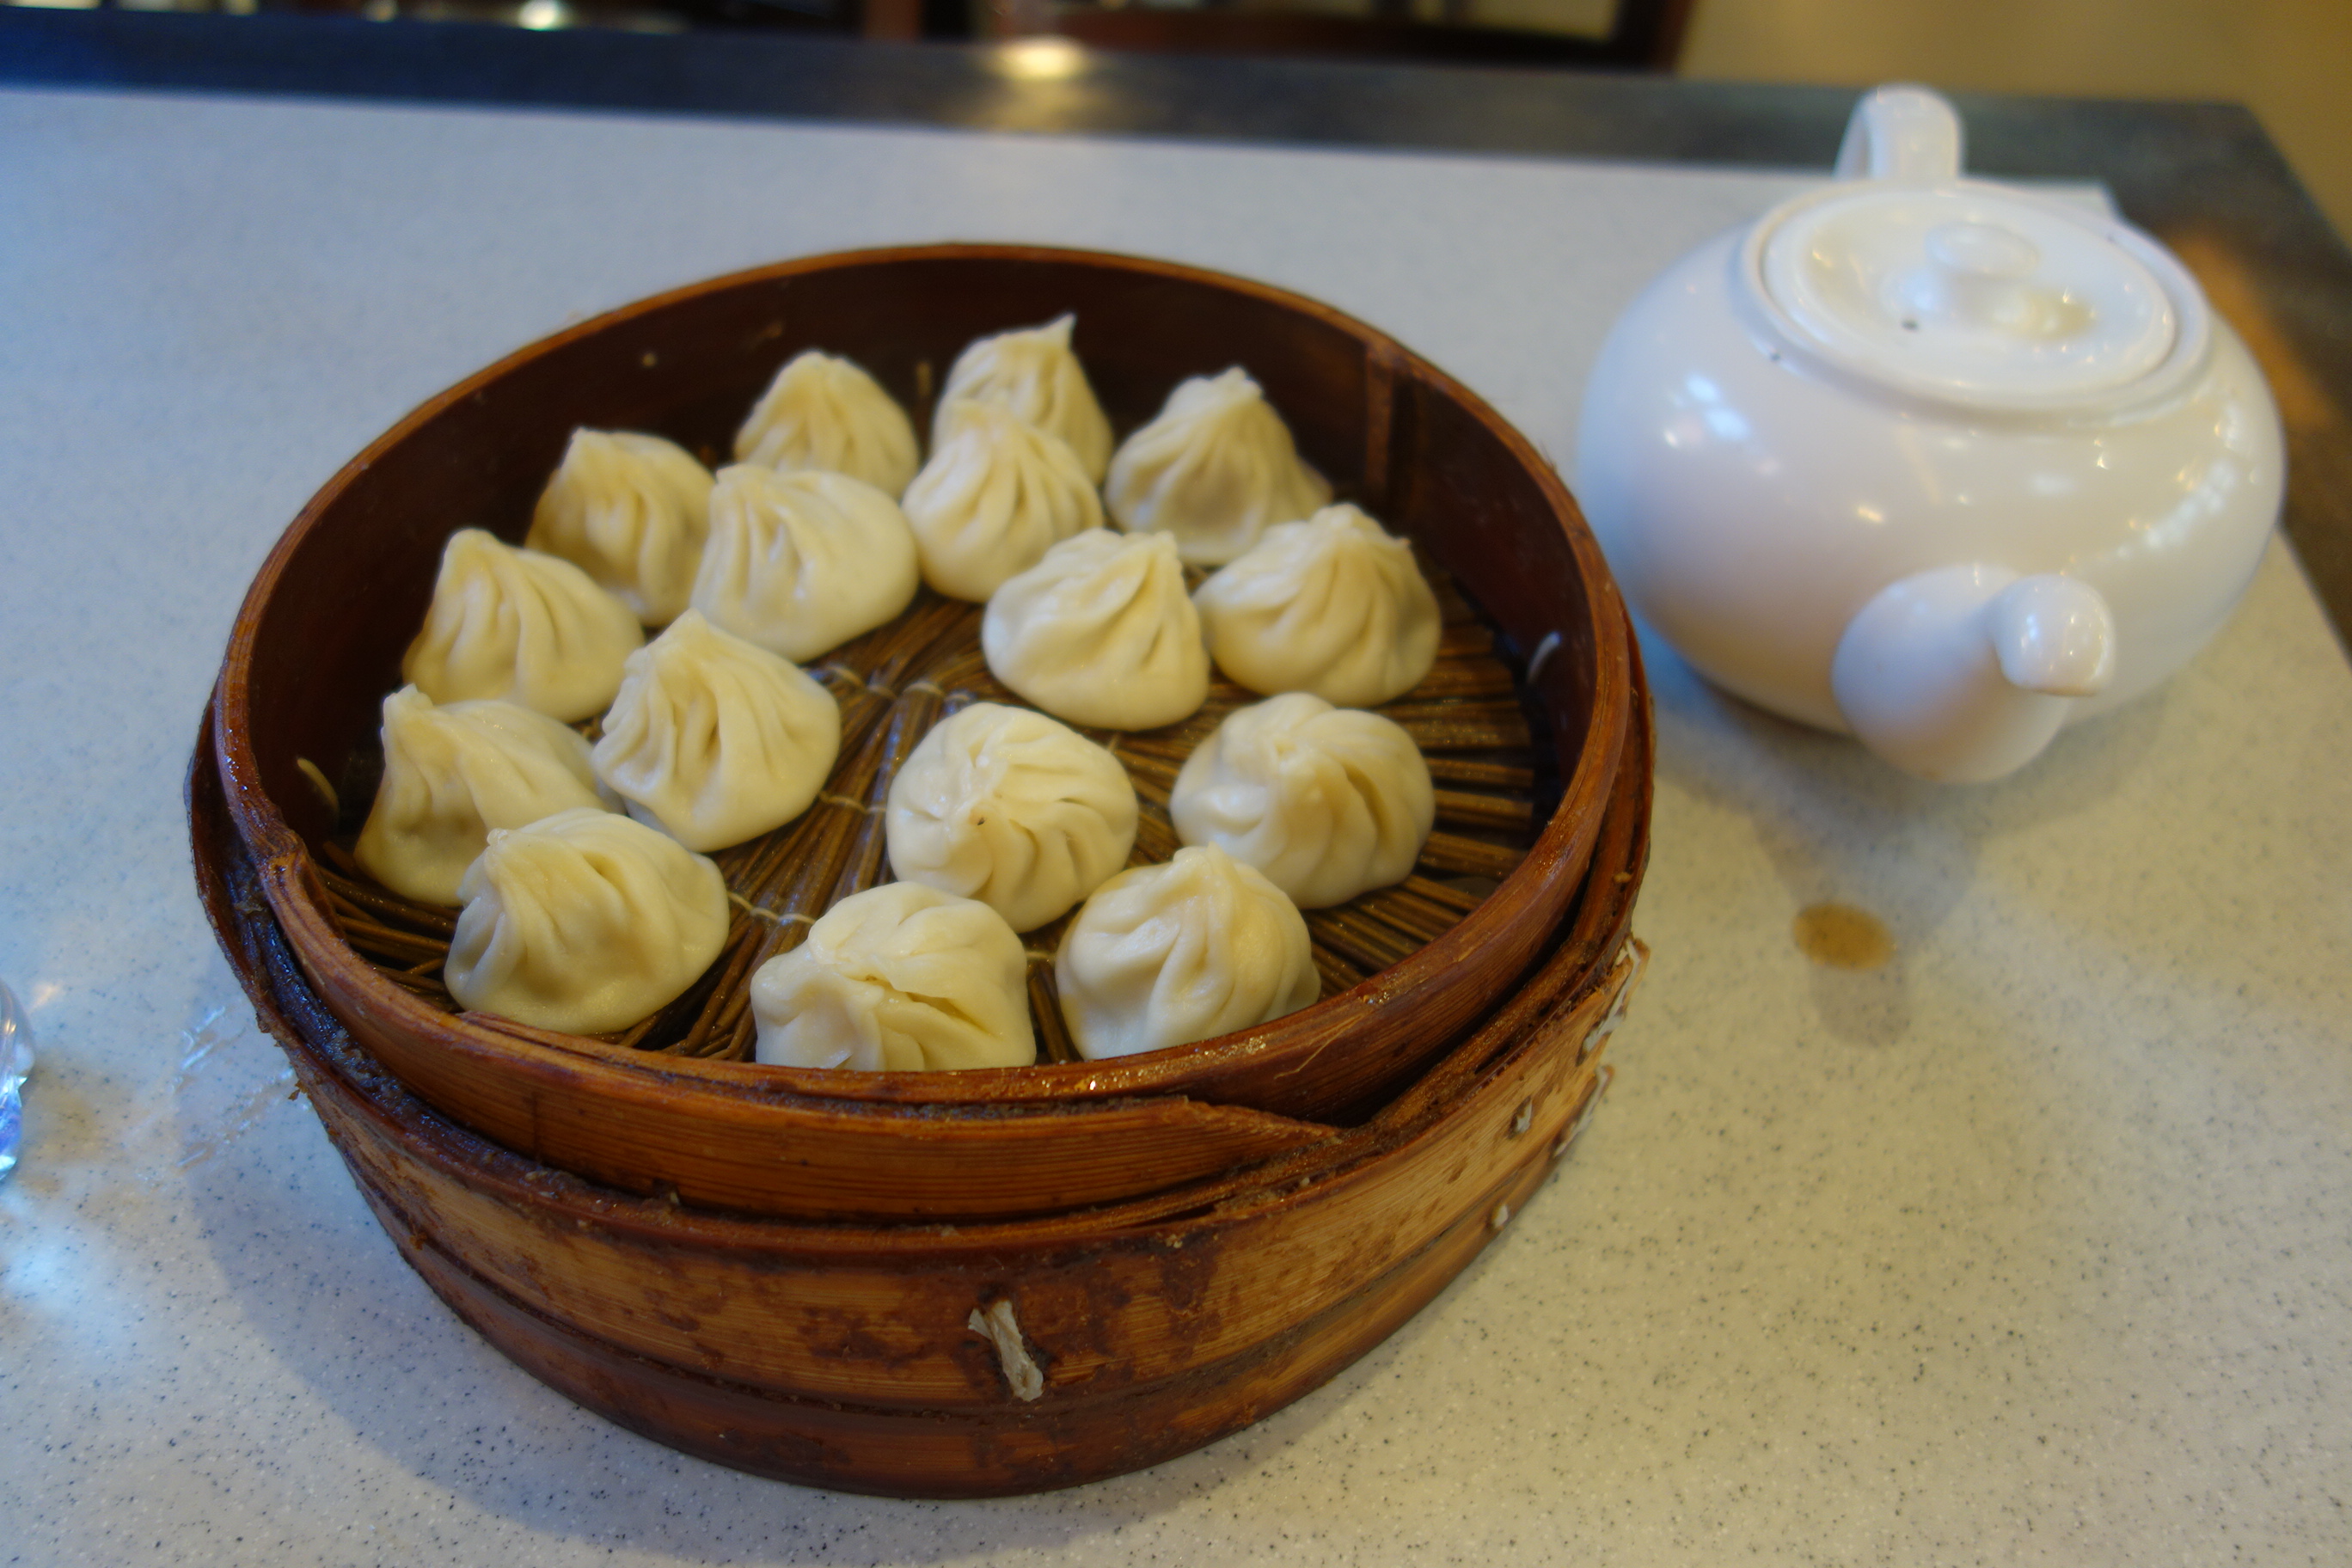 16 dumplings for 20 yuan (~$3). The teapot is full of vinegar.